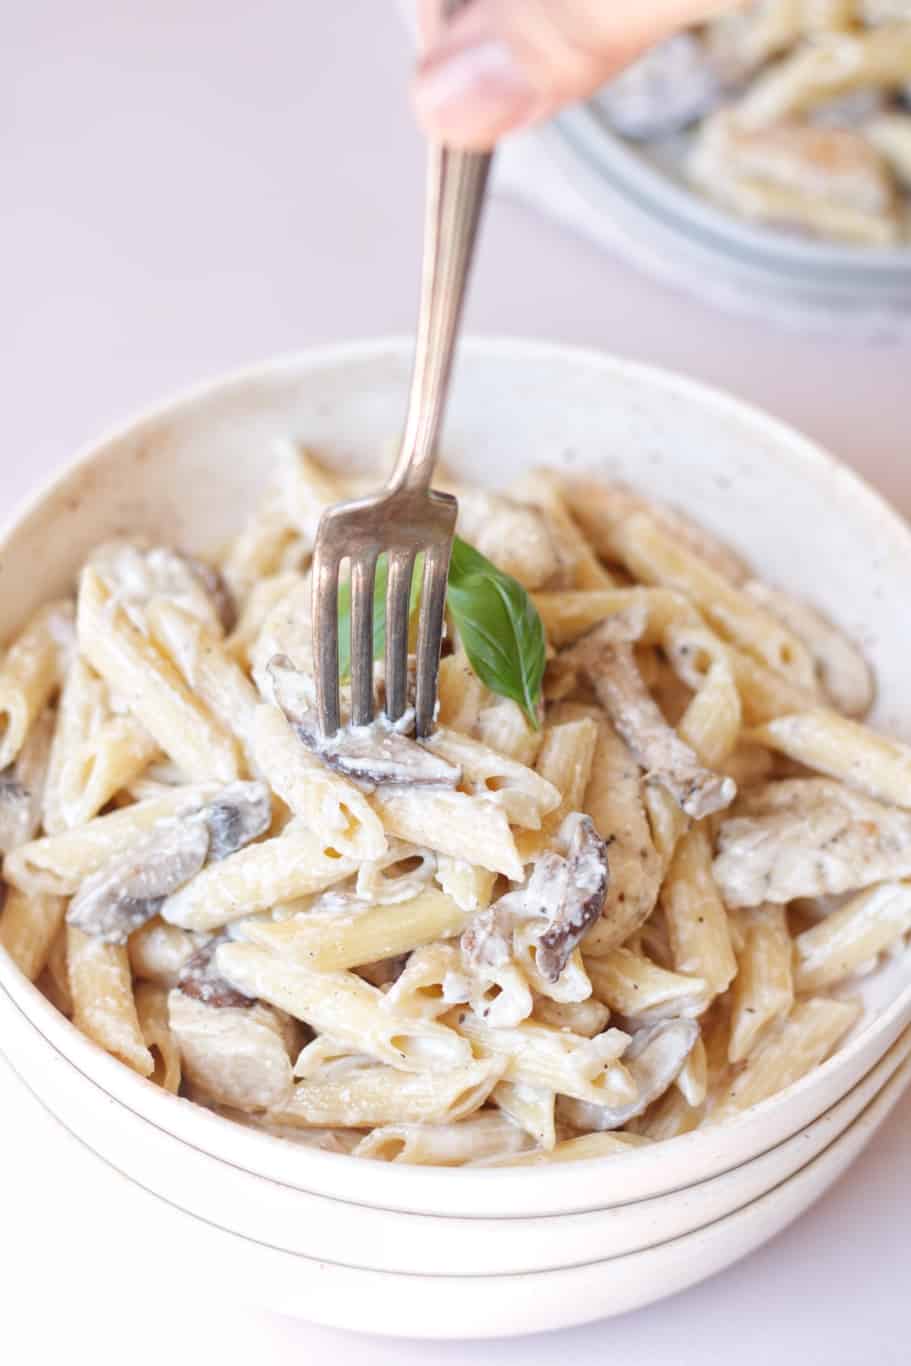 Creamy and cheesy pasta da vinci bowl bursting with flavor